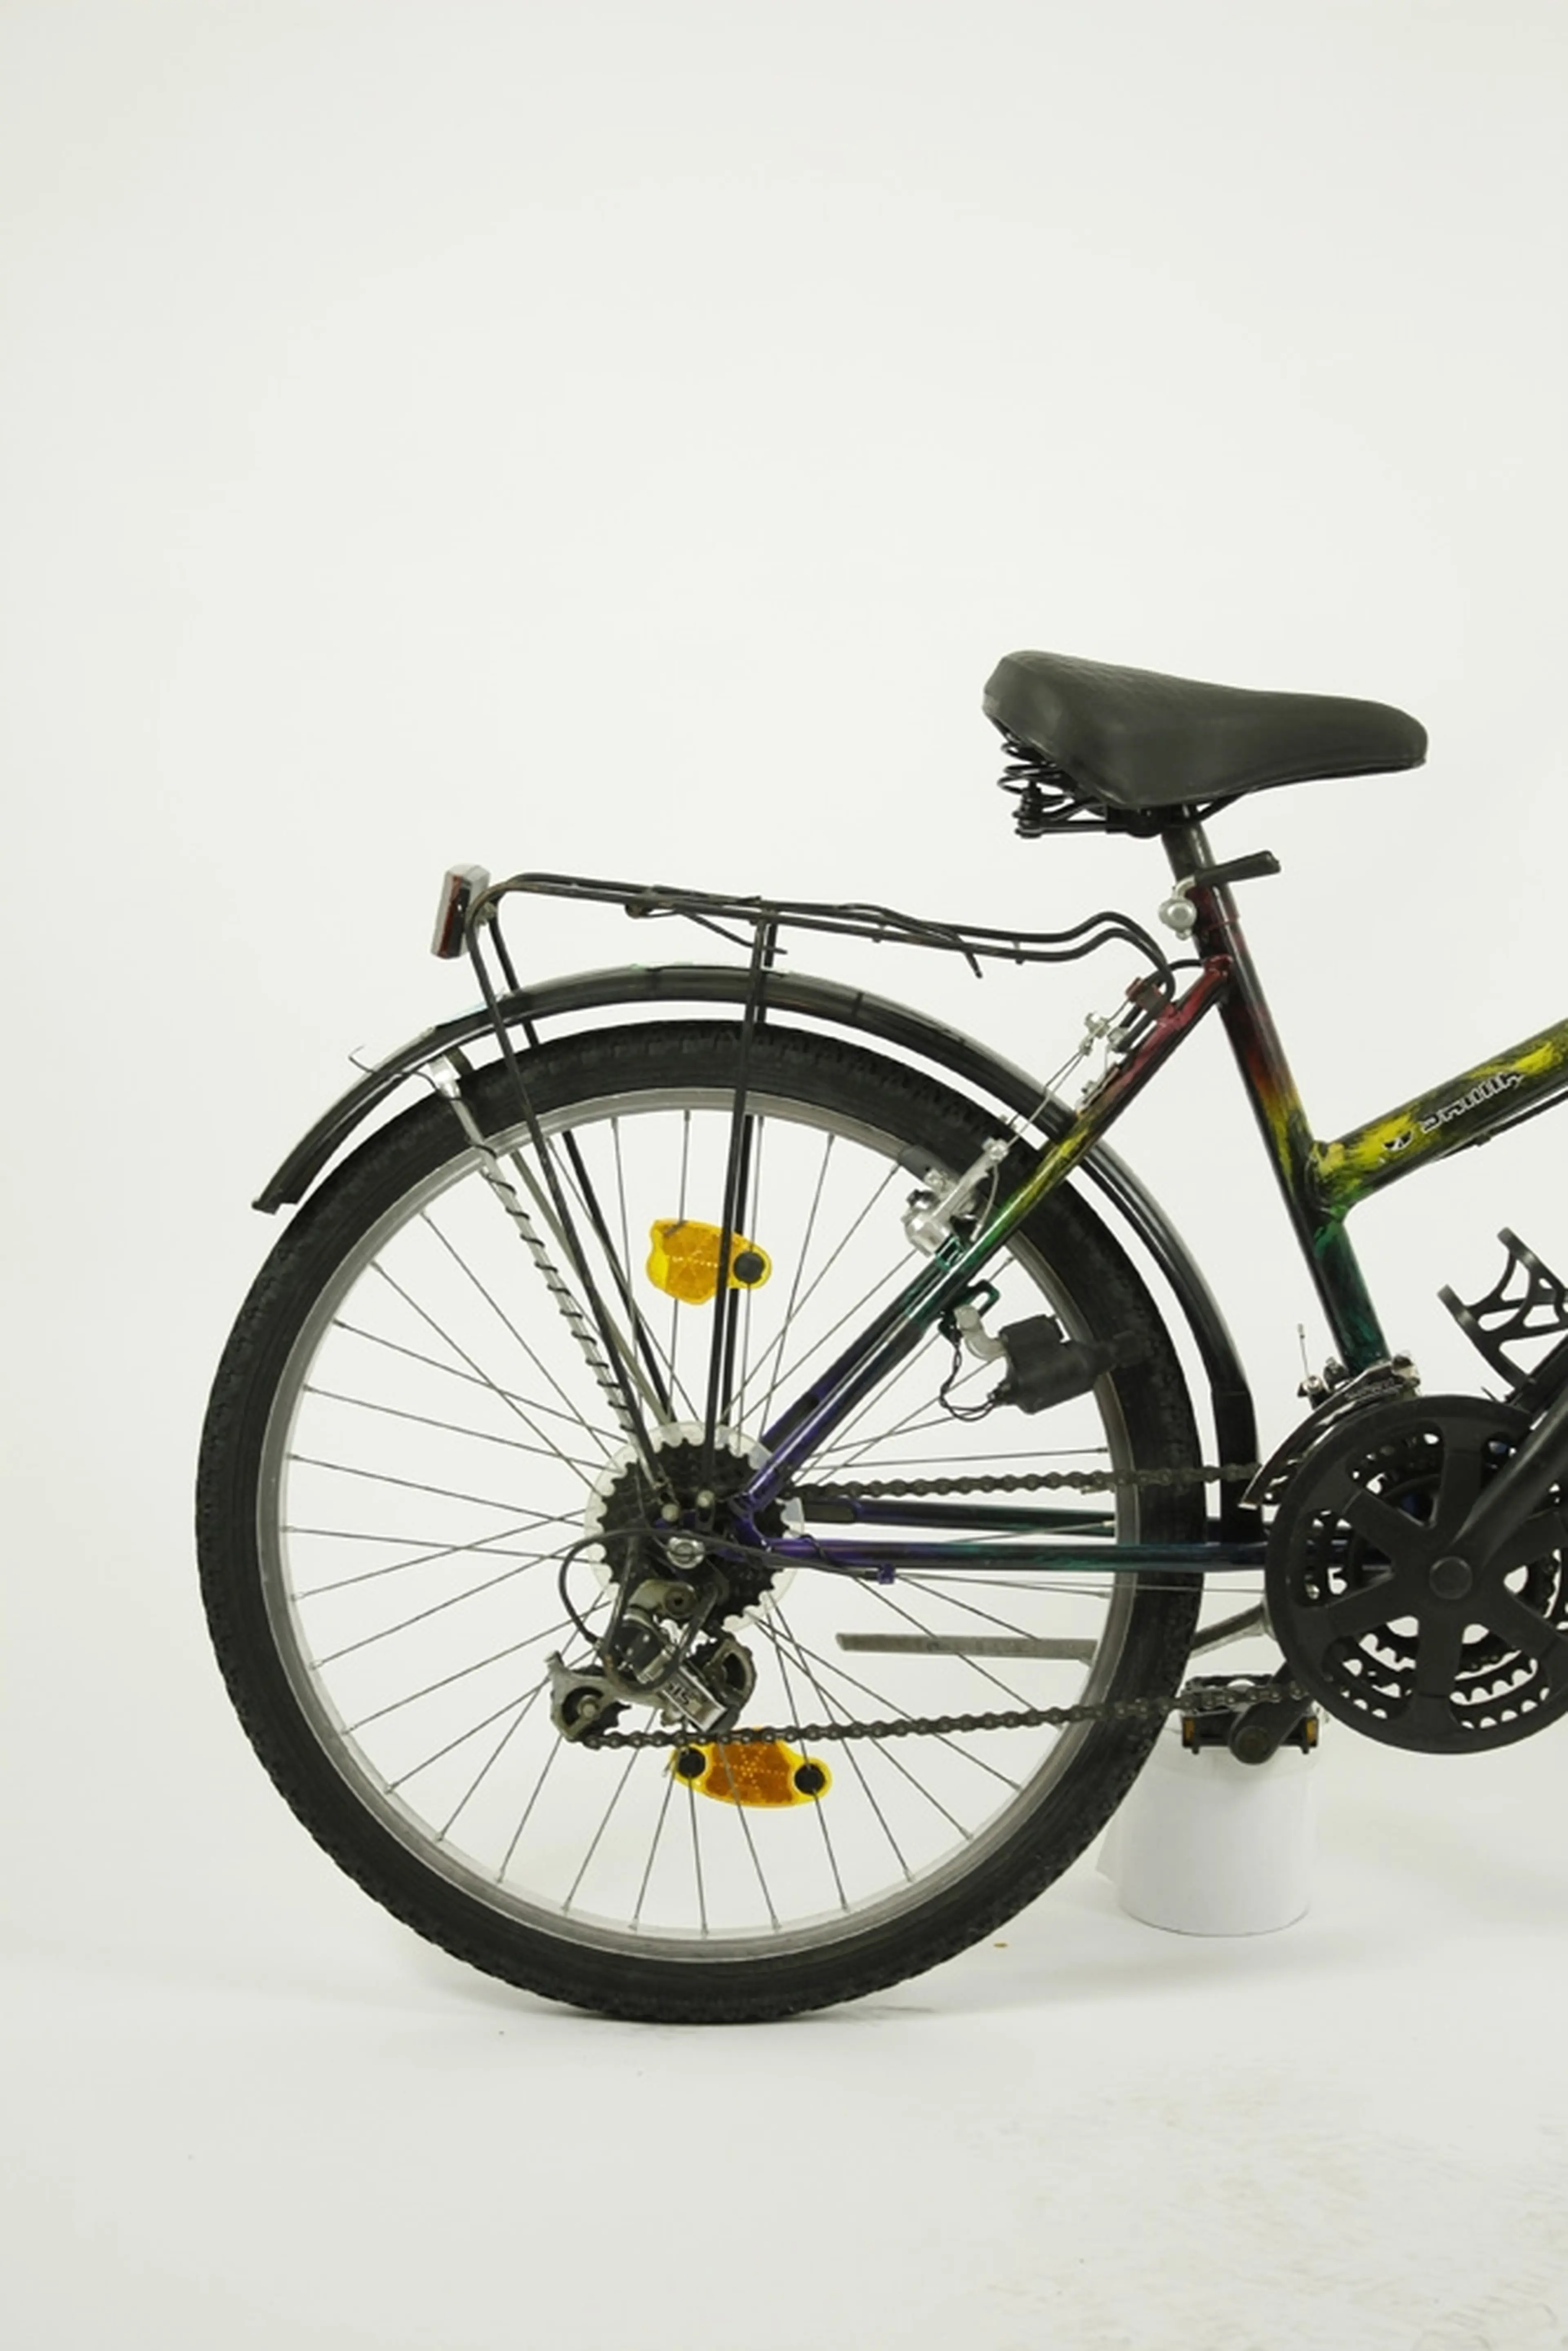 2. Bicicleta copii Tecno Bike